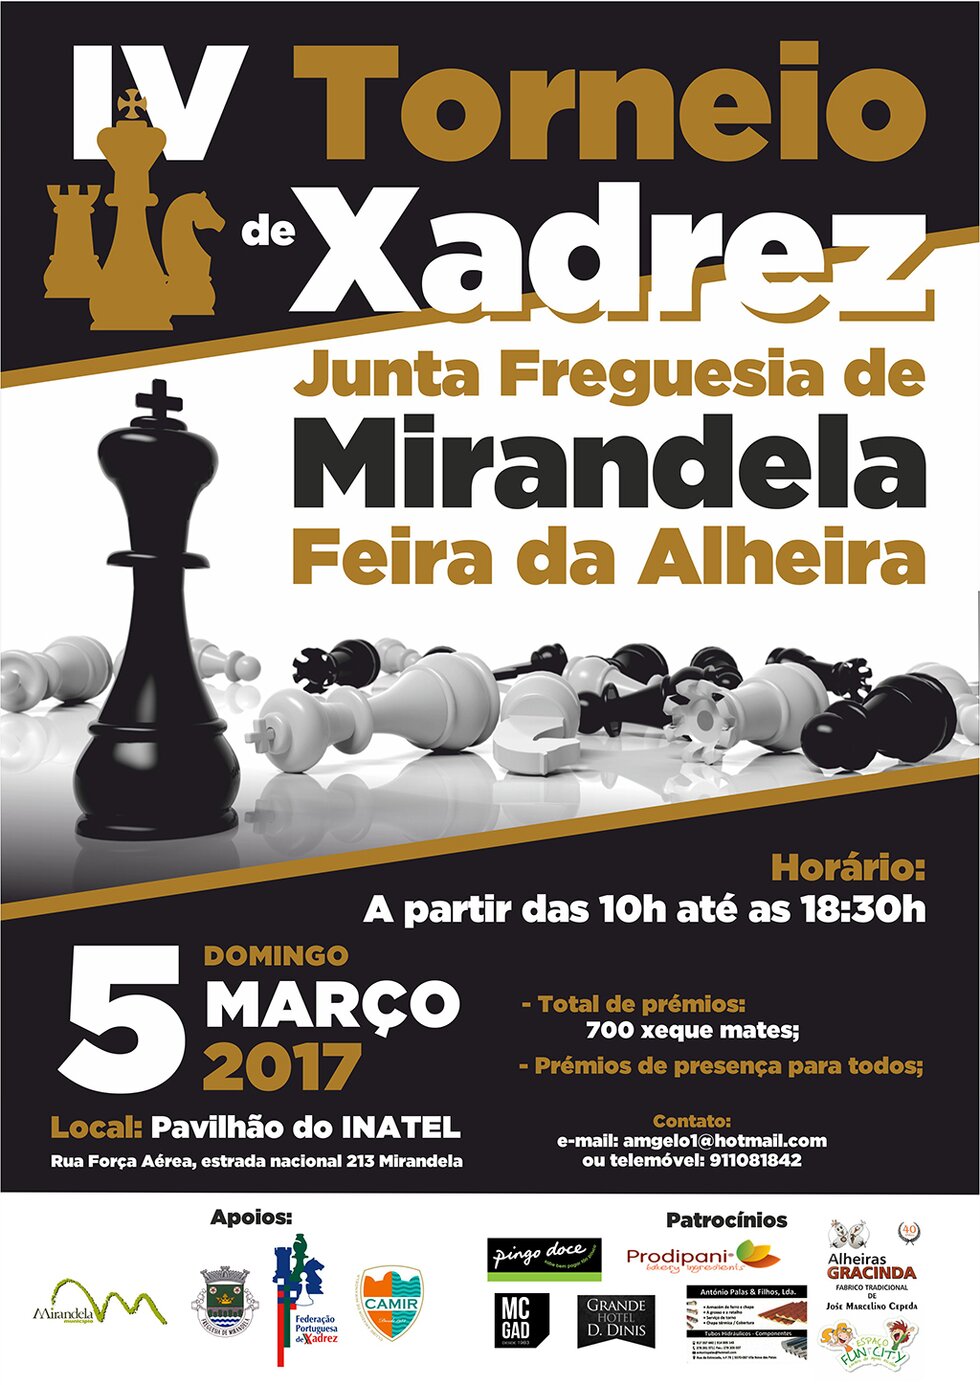 05-MAR_IV_Torneio_de_Xadrez_Junta_Freguesia_de_Mirandela_Feira_da_Alheira_2017